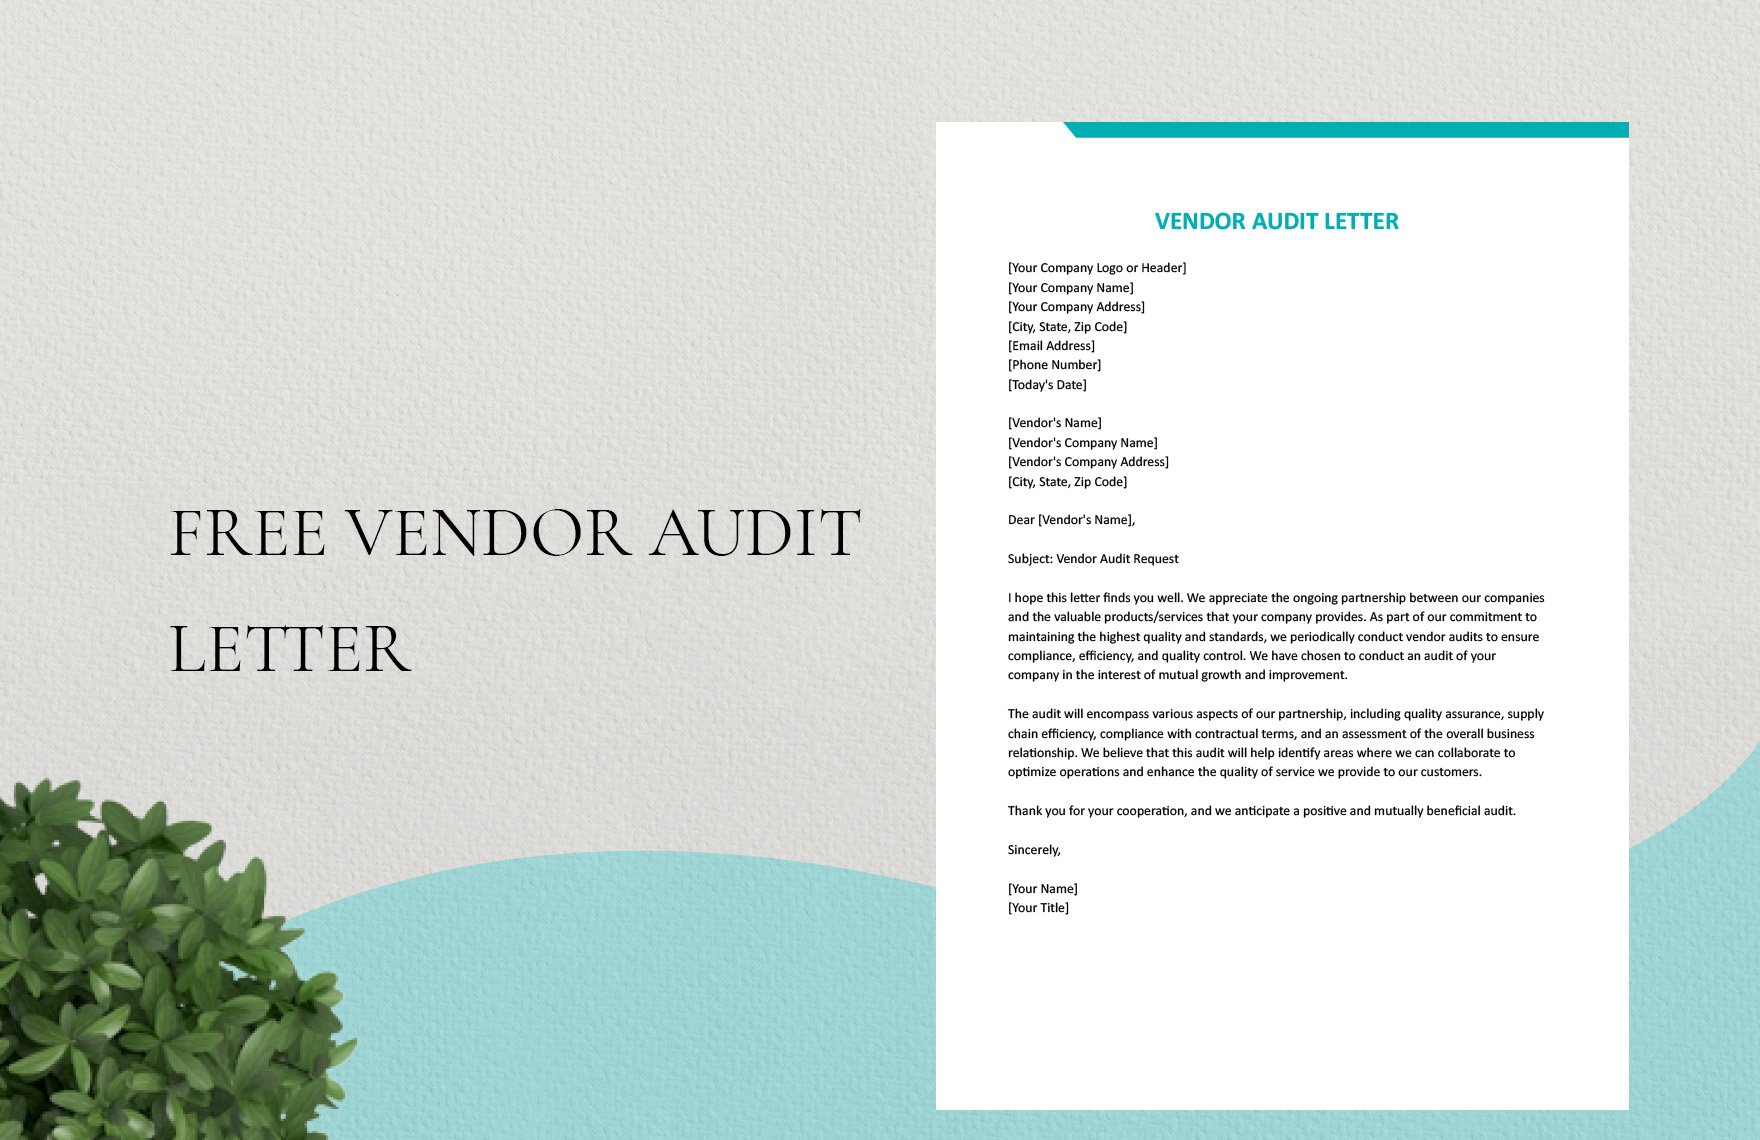 Vendor Audit Letter in Word, Google Docs